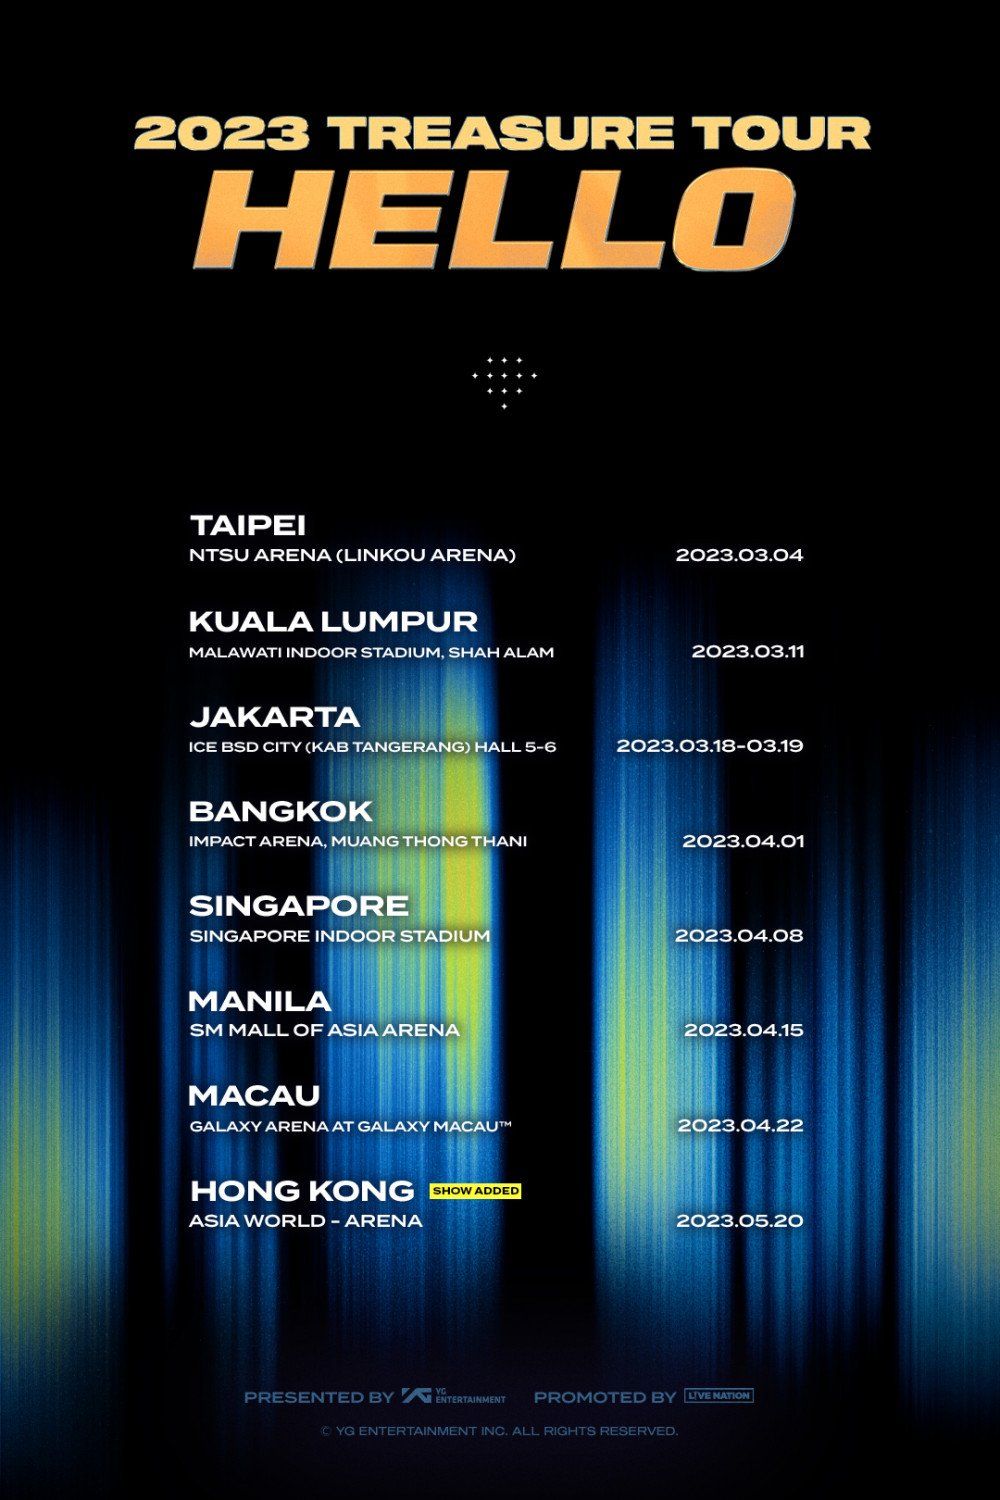 Jadwal Tur TREASURE Hello 2023, Hong Kong Masuk dalam Perhentian Baru, di Indonesia akan Berlangsung 2 Hari